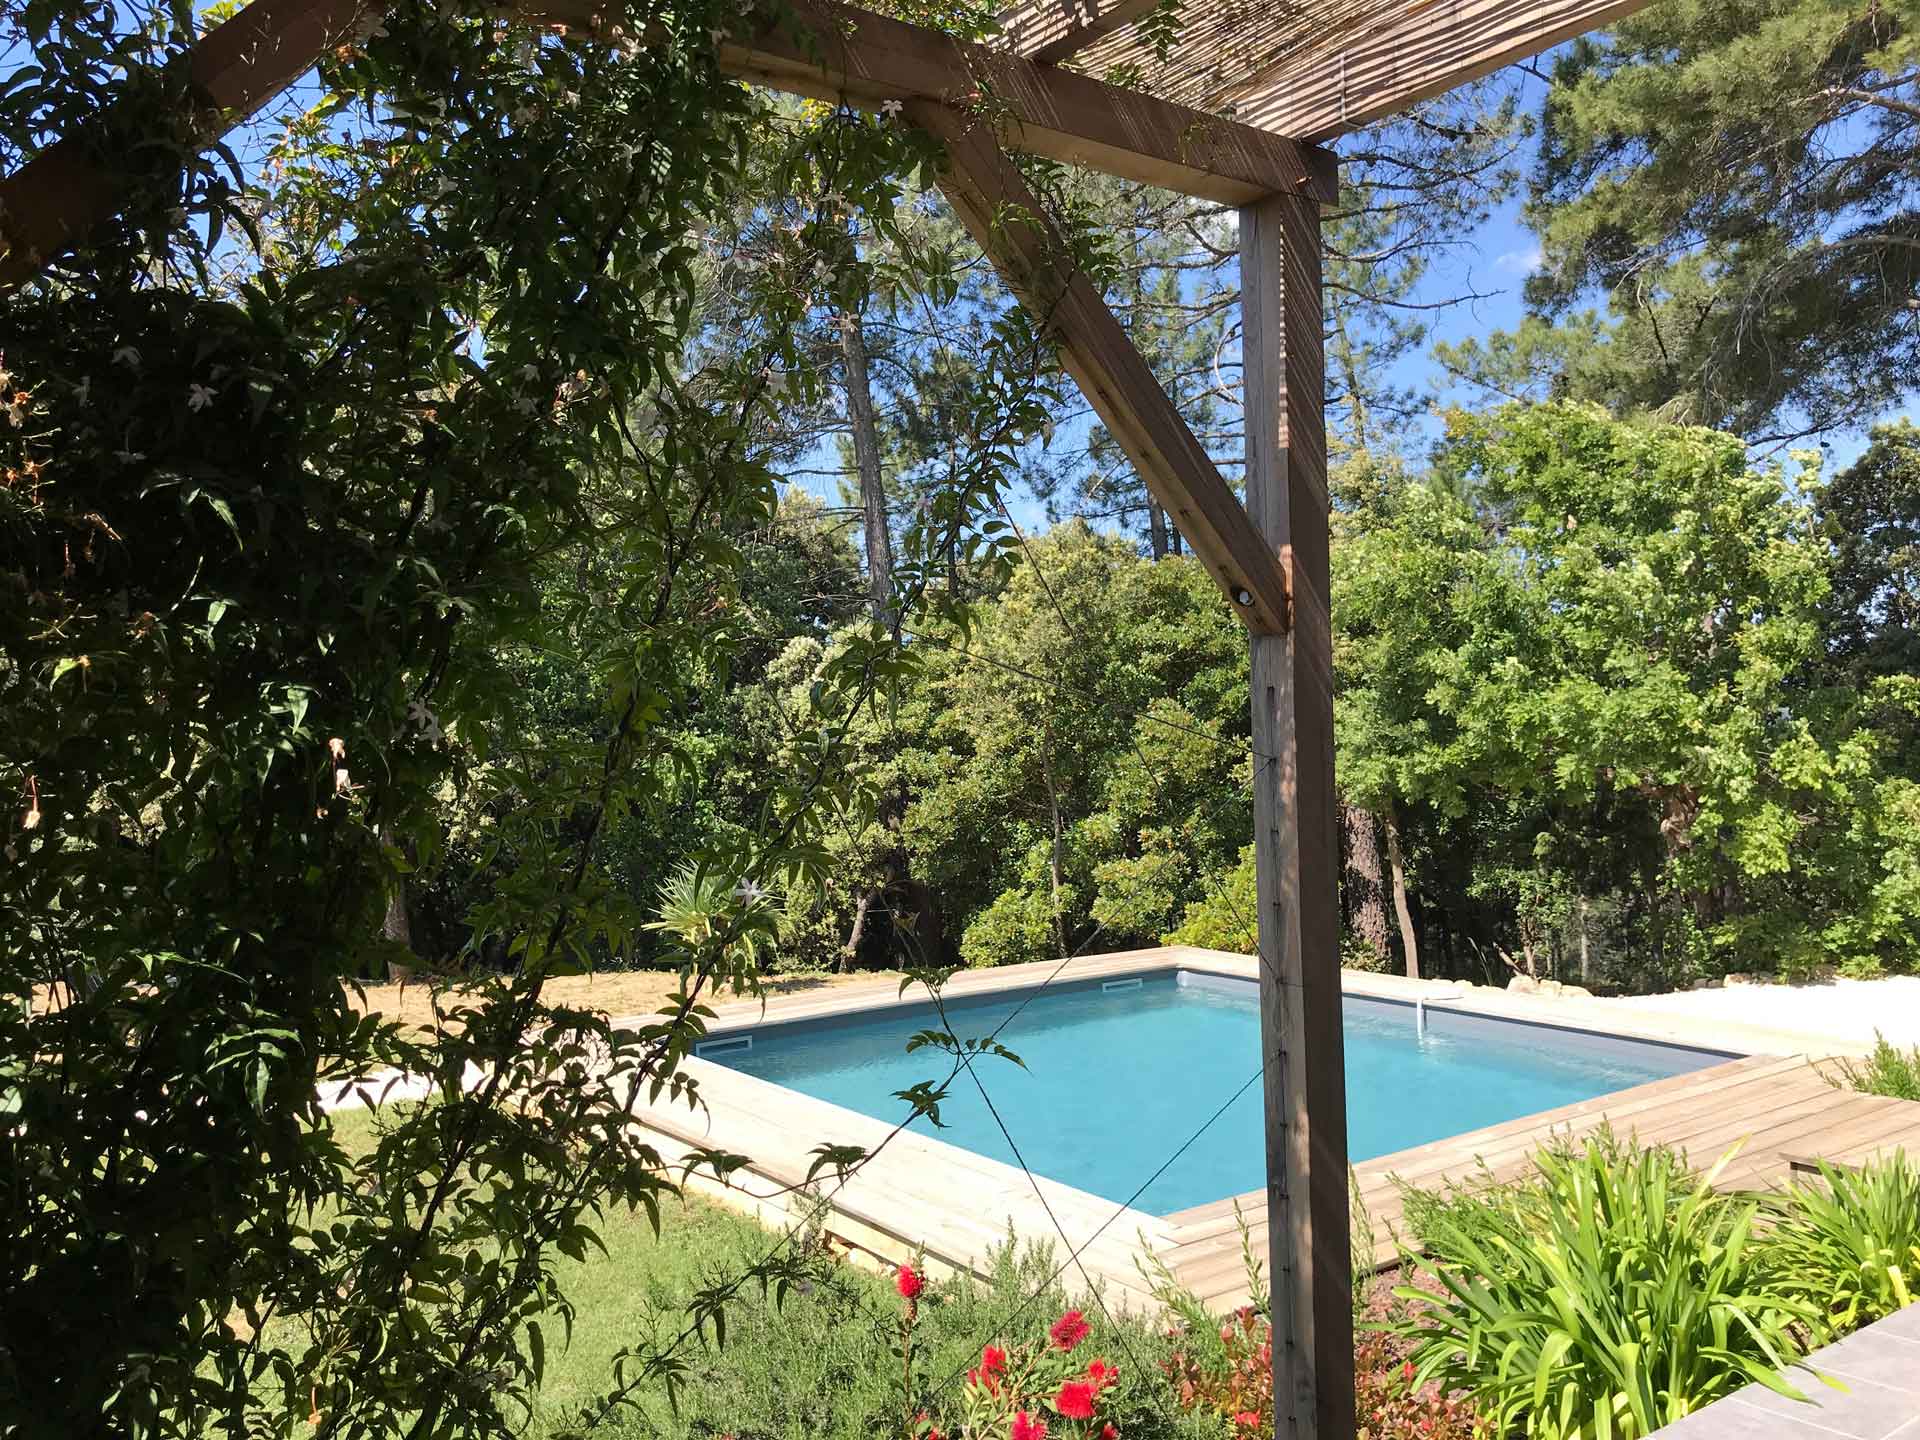 Maison vacances Ardèche jardin piscine